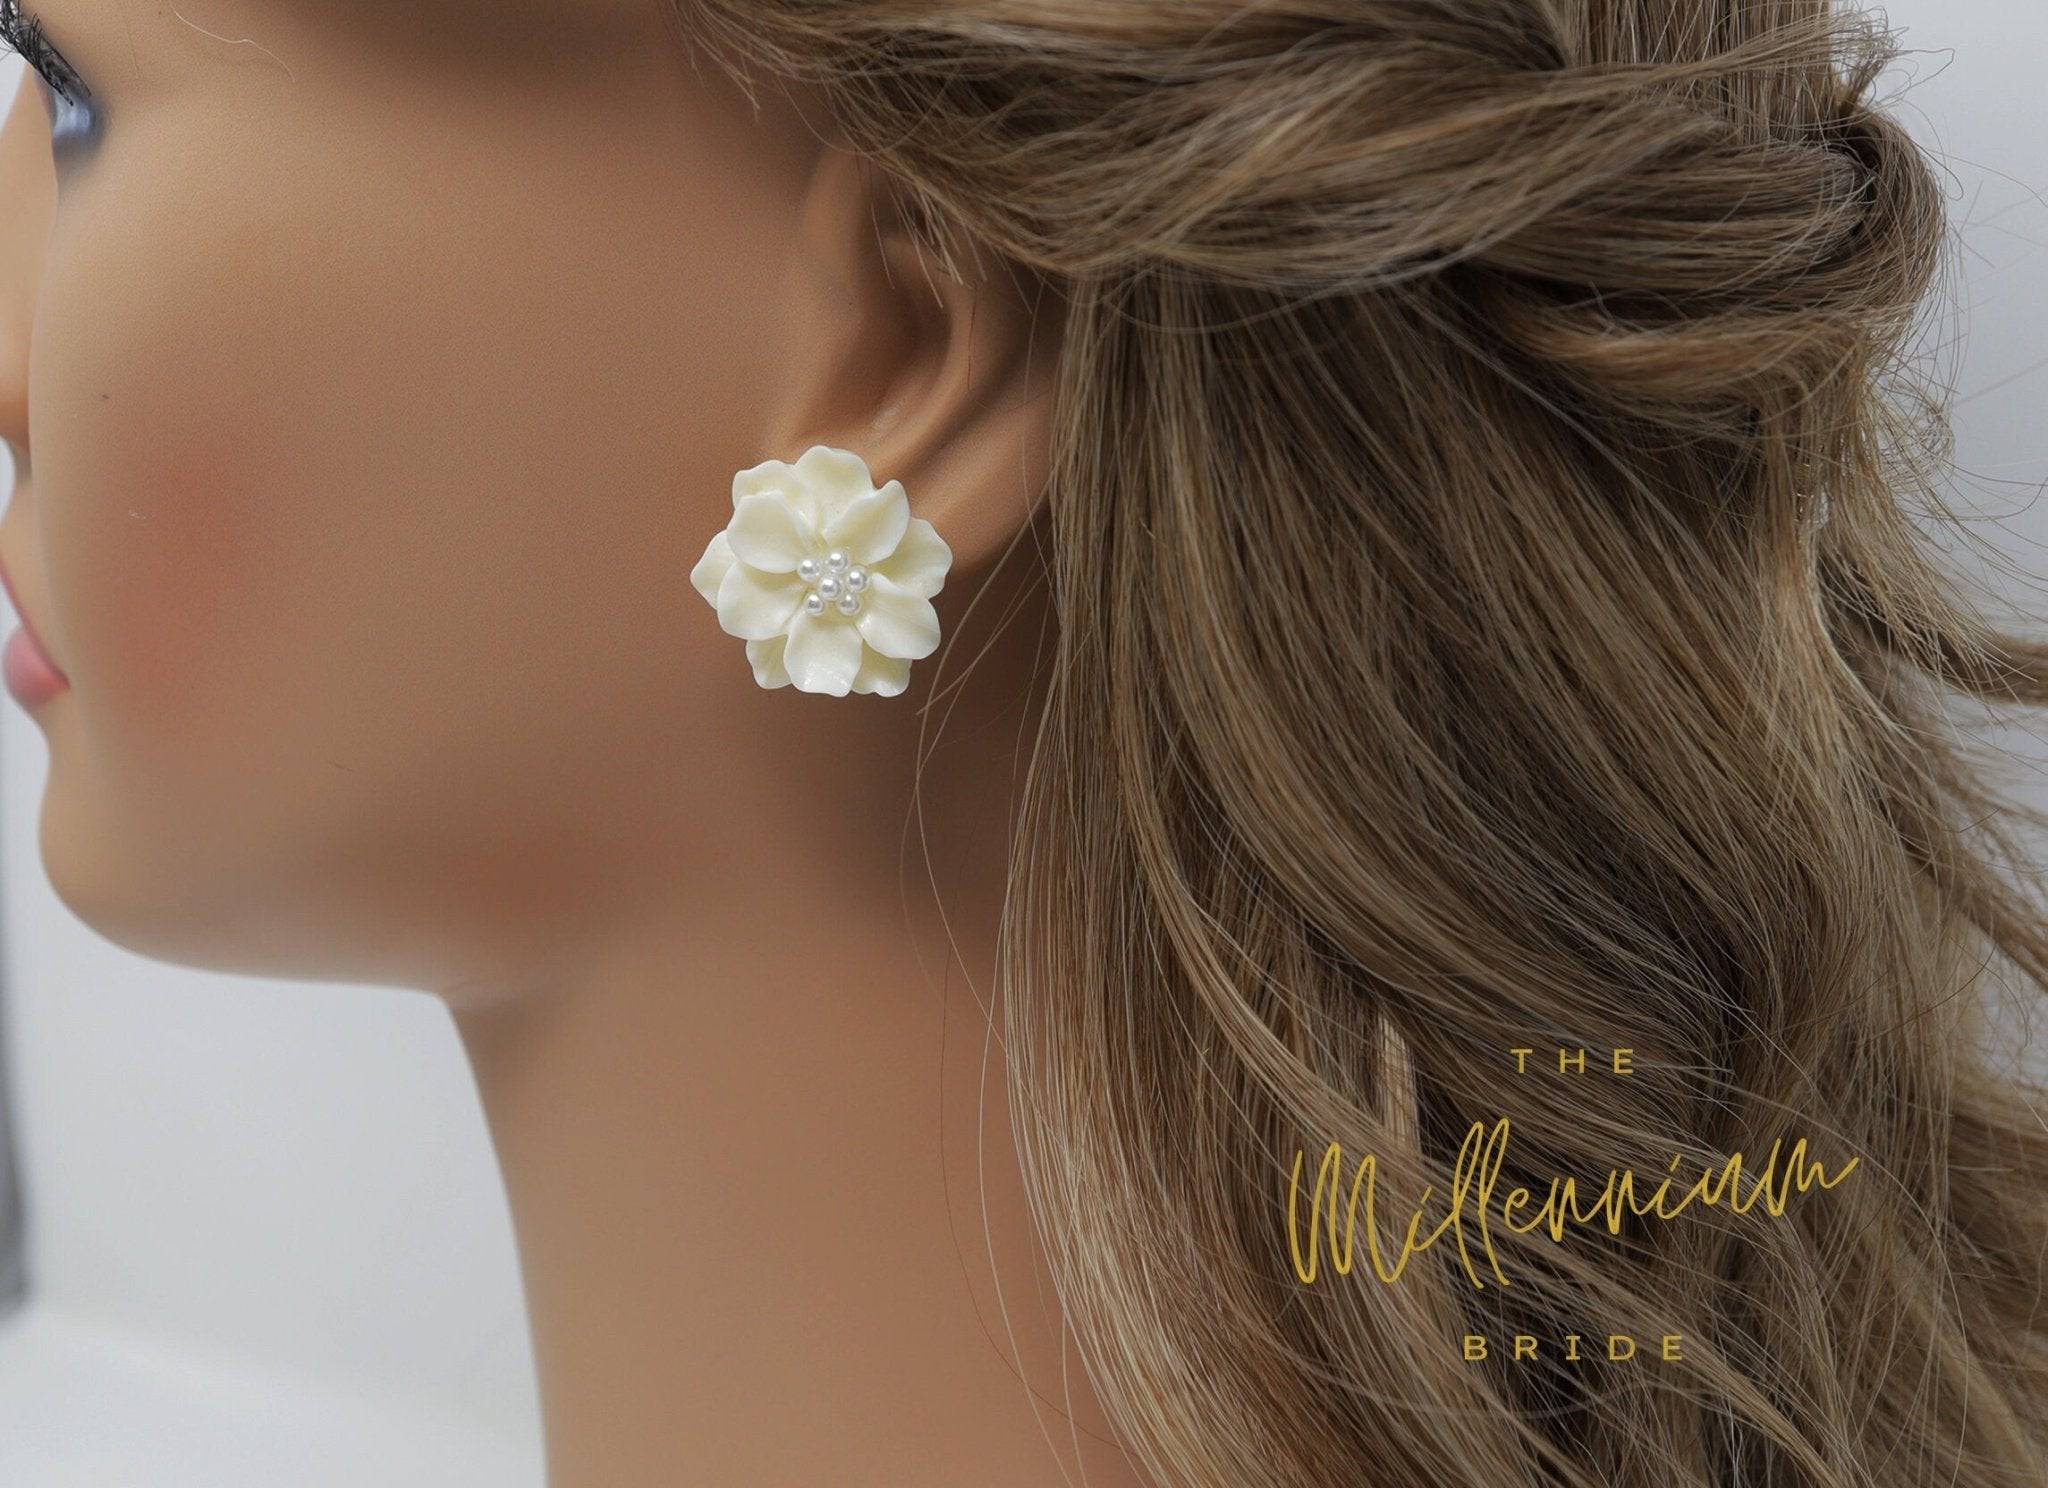 Amazon.com: White Flower Earrings